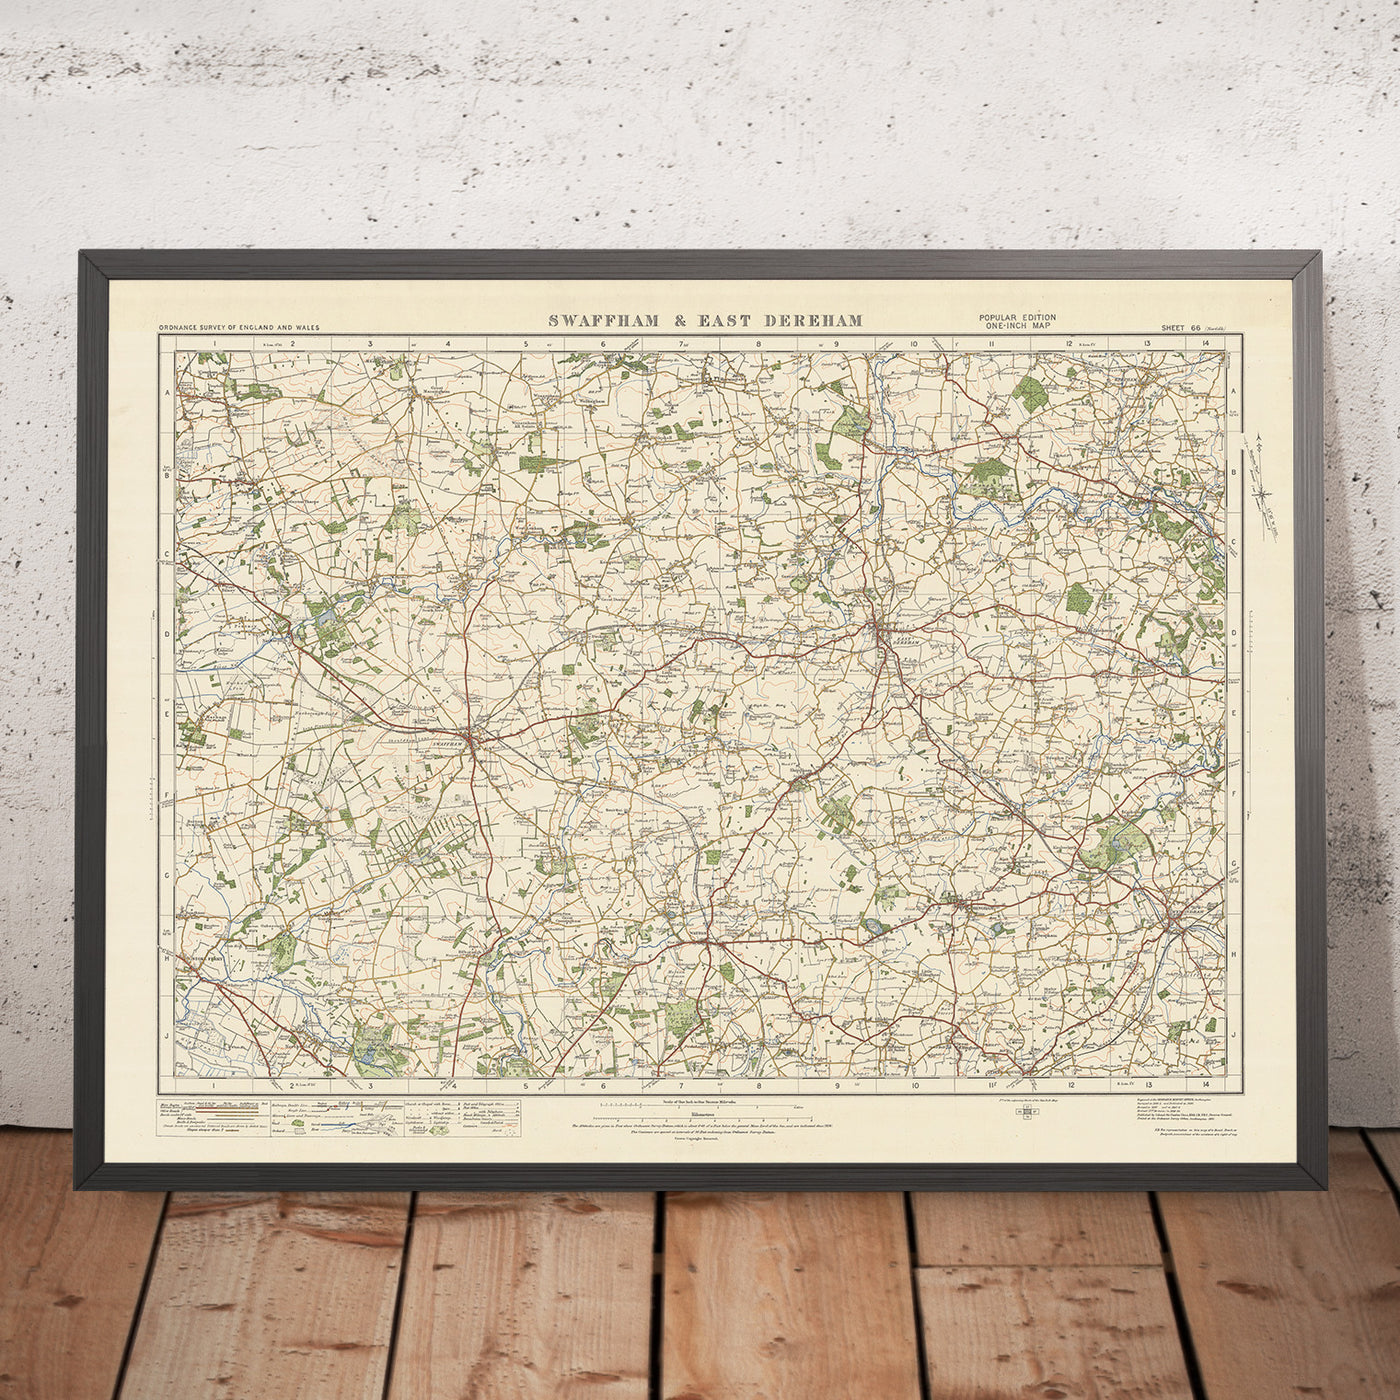 Old Ordnance Survey Map, Sheet 66 - Swaffam & East Dereham, 1925: Watton, Wymondham, Attleborough, Reepham, Oxburgh Estate